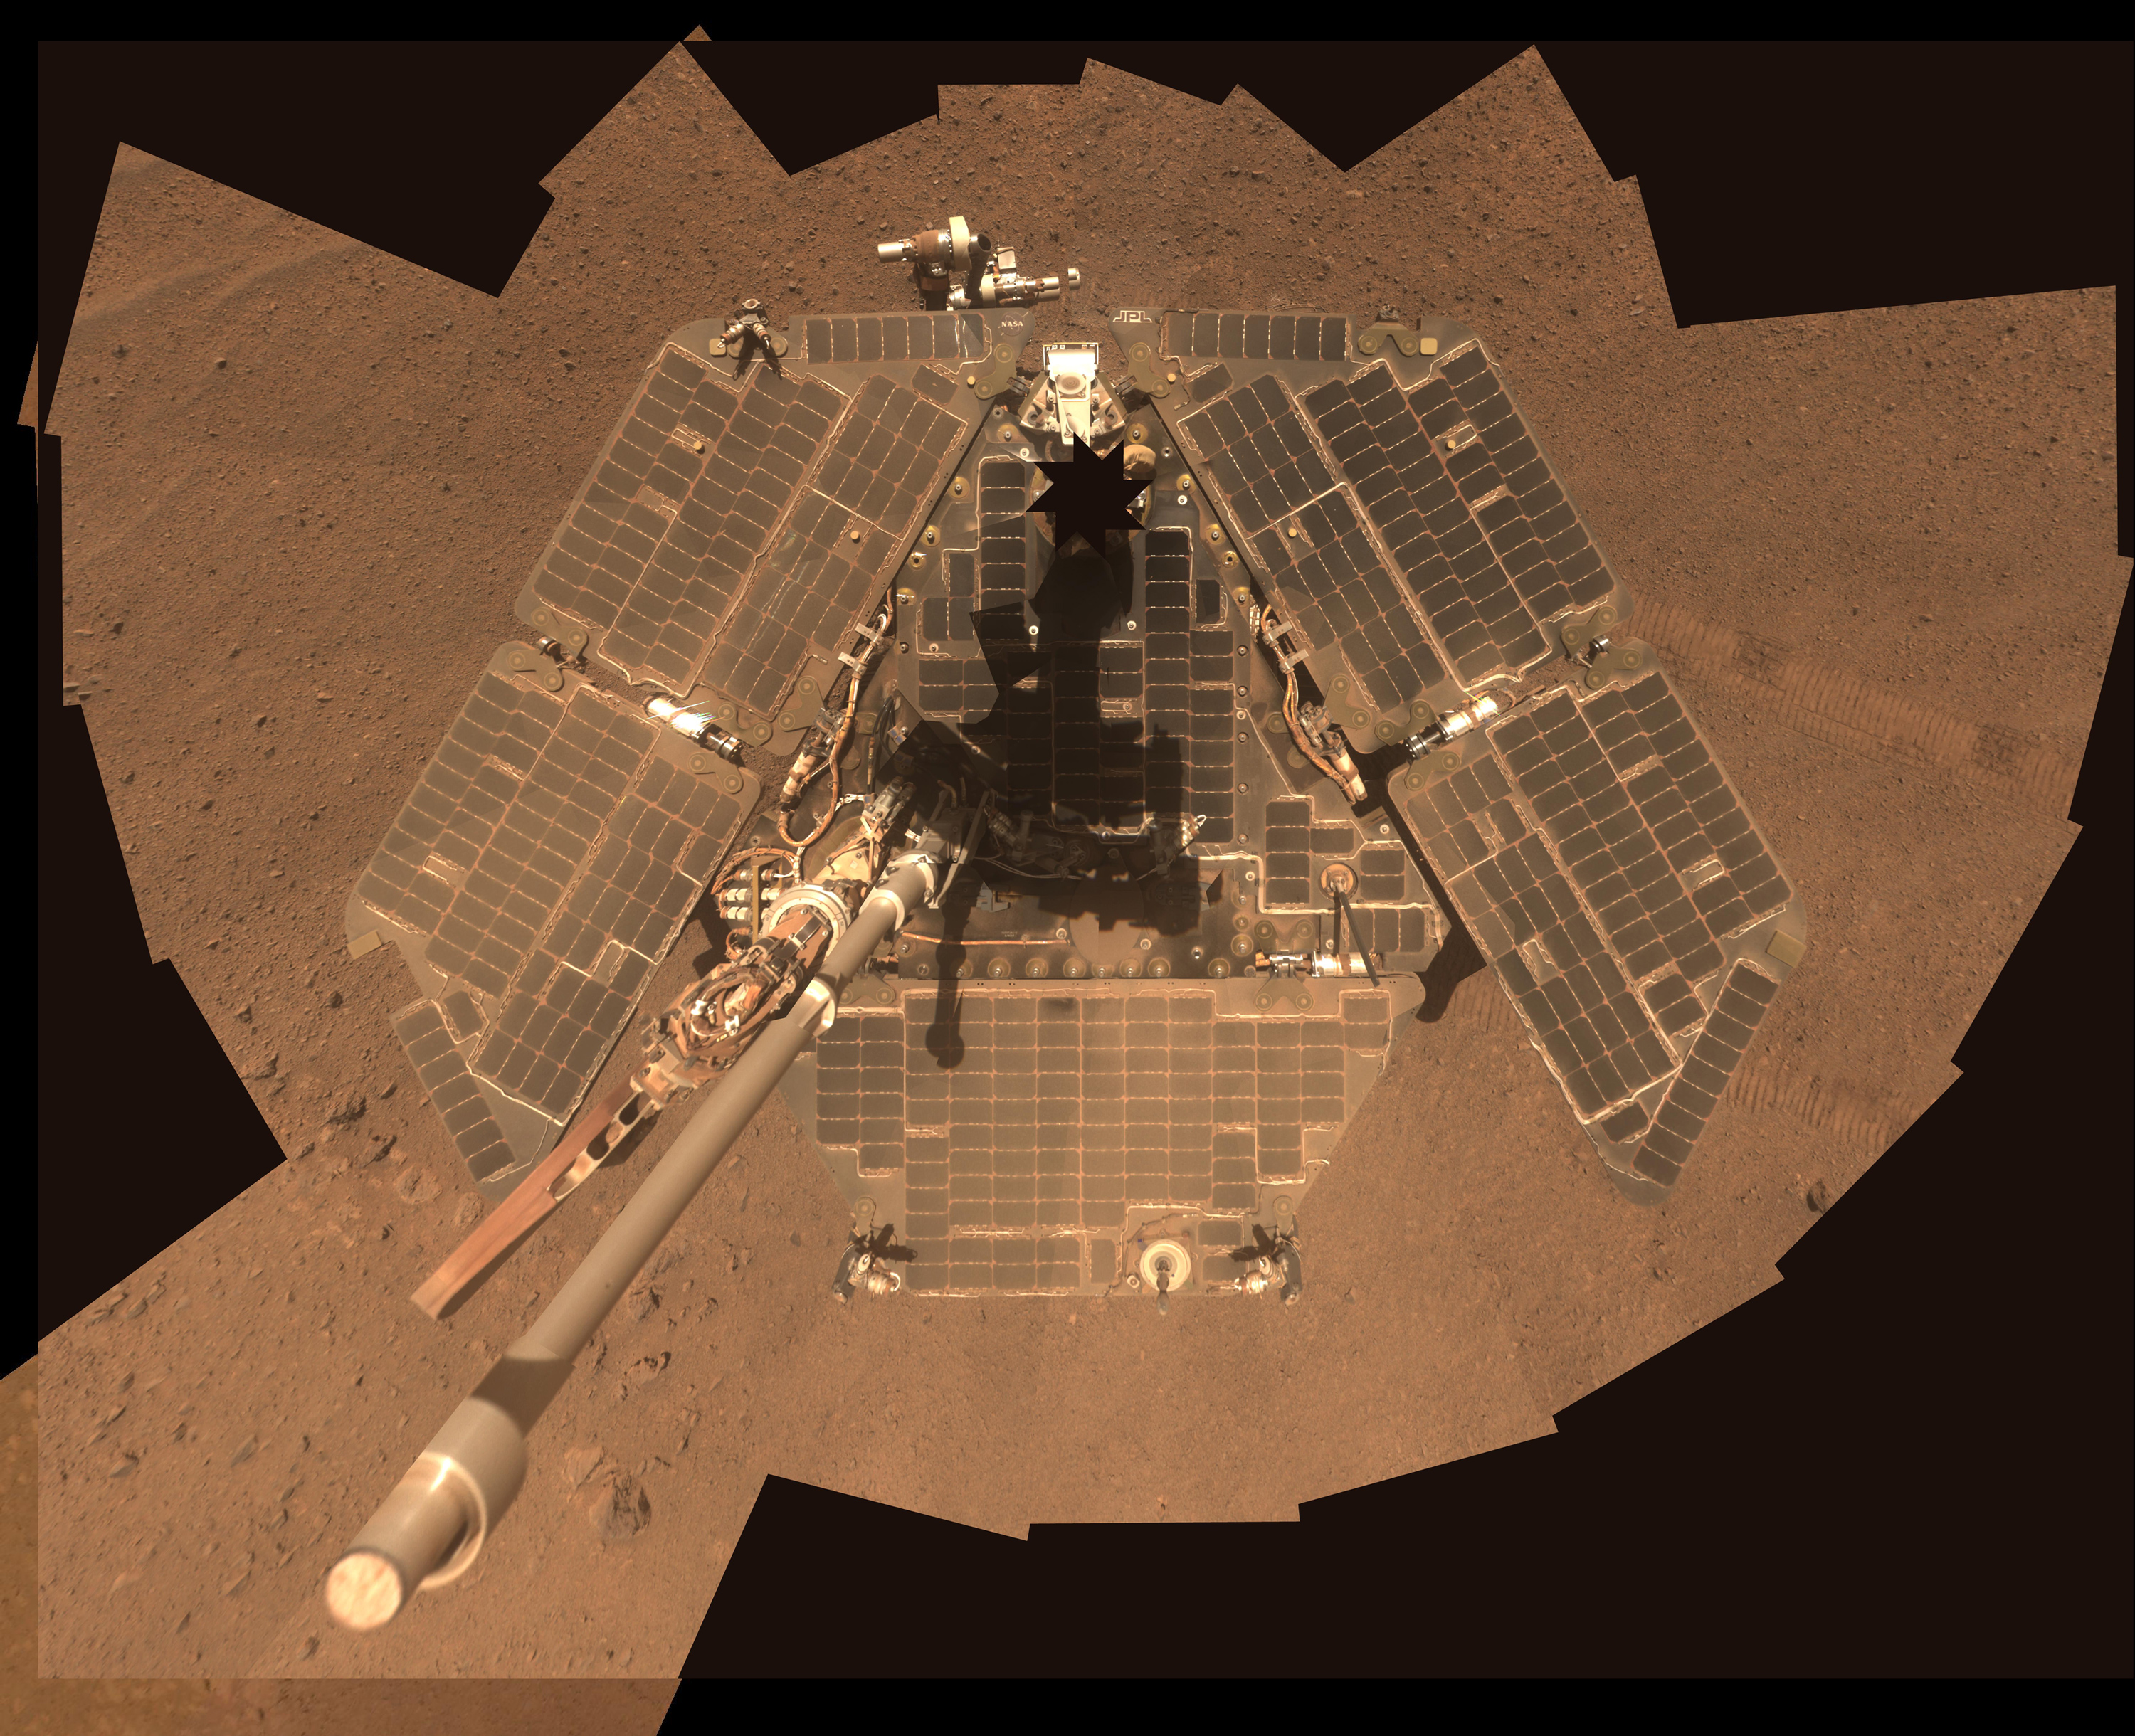 Solar panels on Mars - cleaner